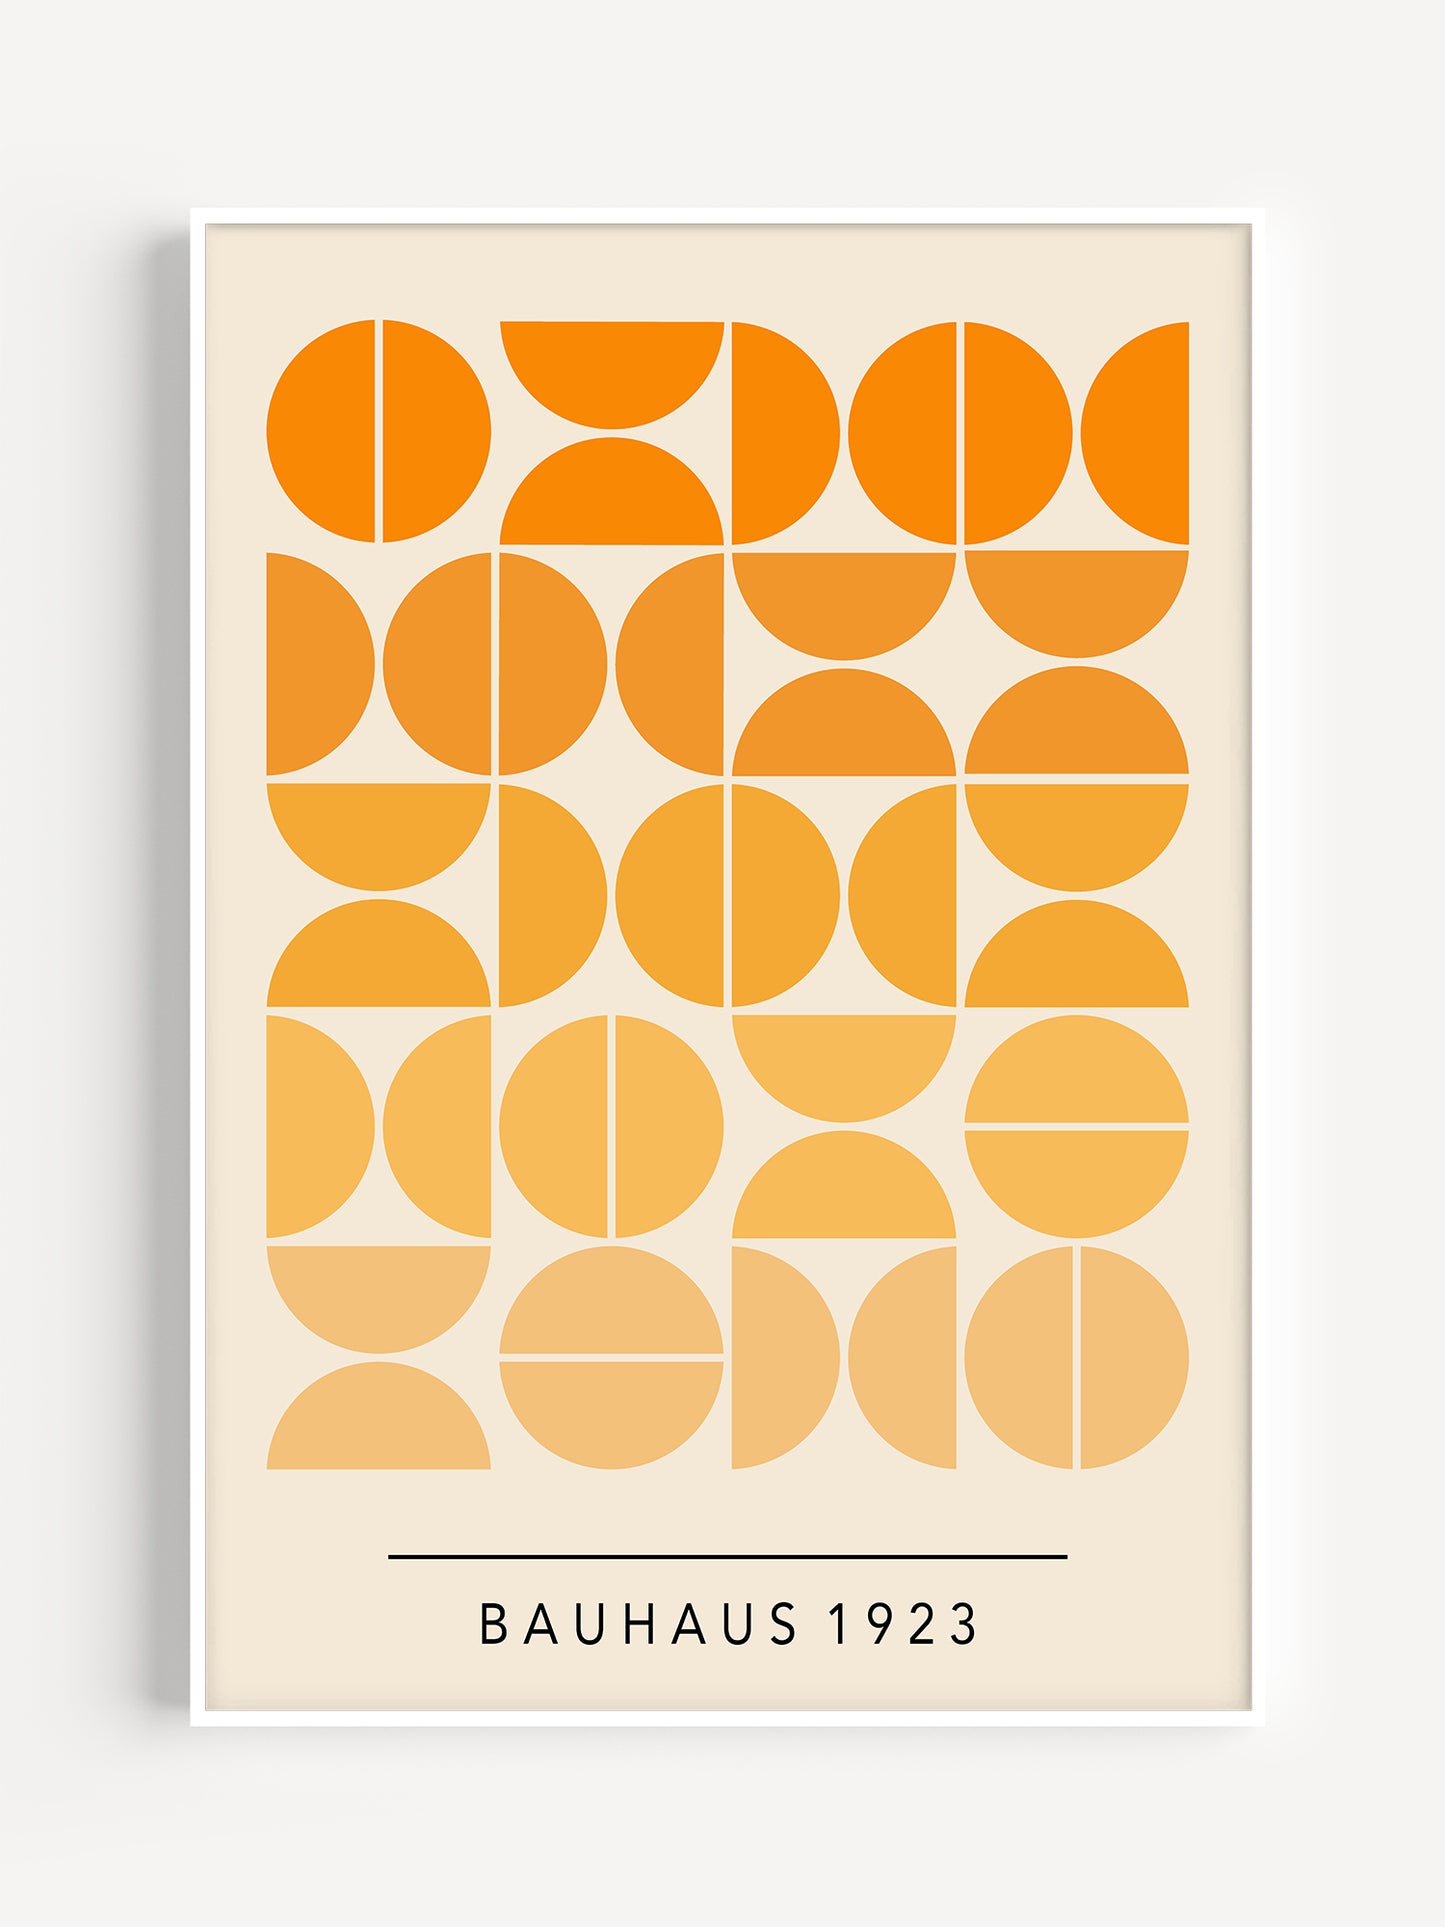 Semi Circles Bauhaus Poster | Digital Download